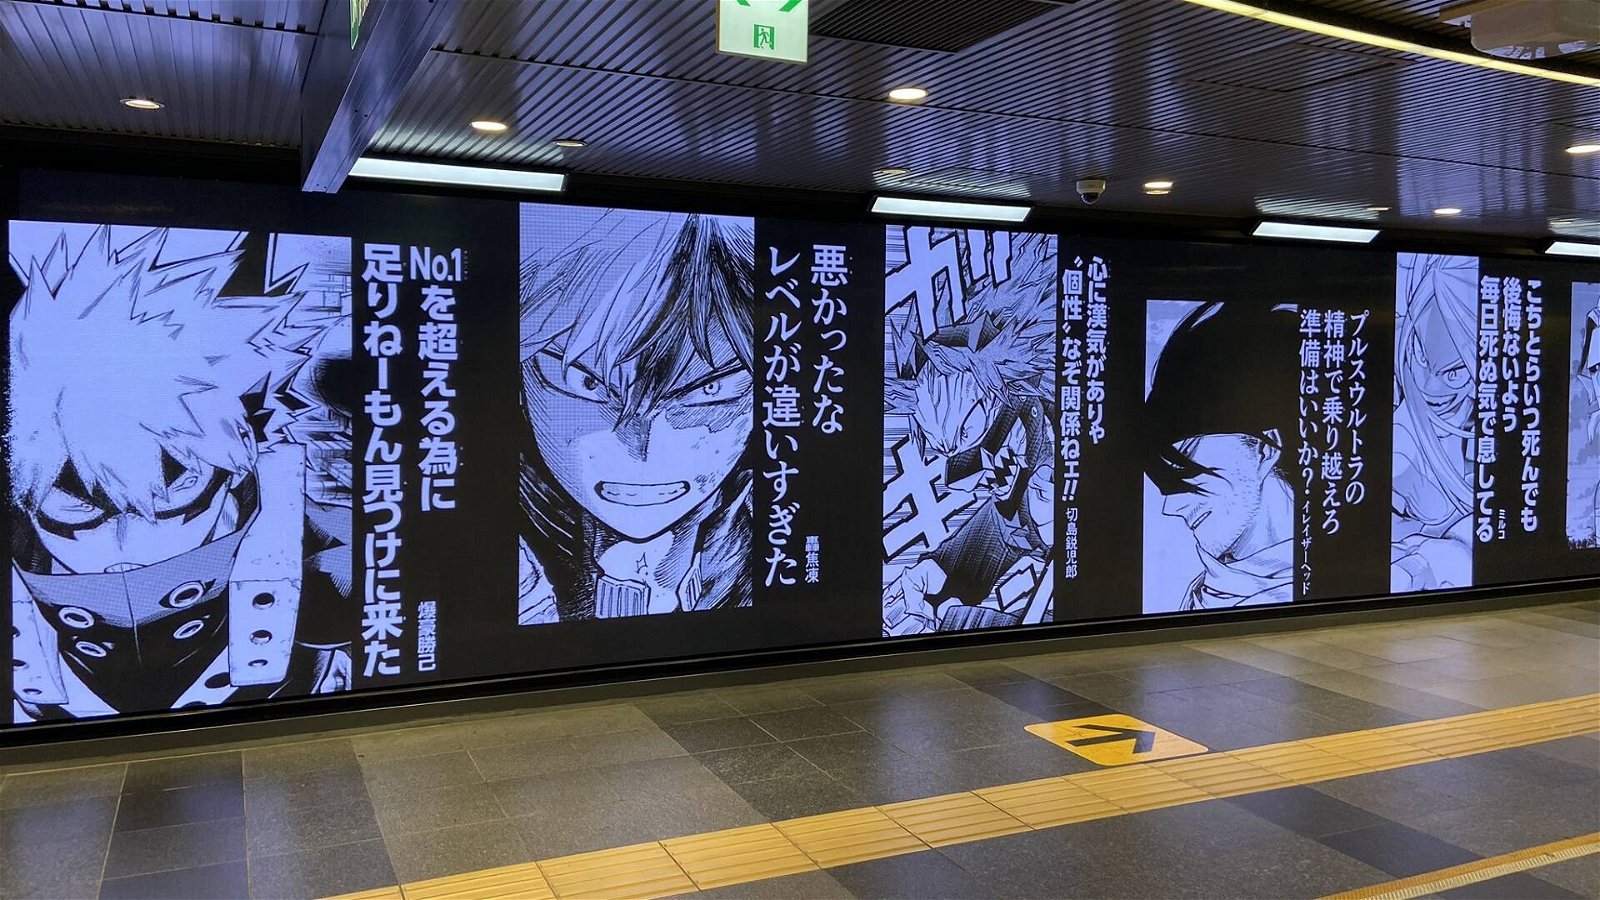 Immagine di My Hero Academia invade Shibuya